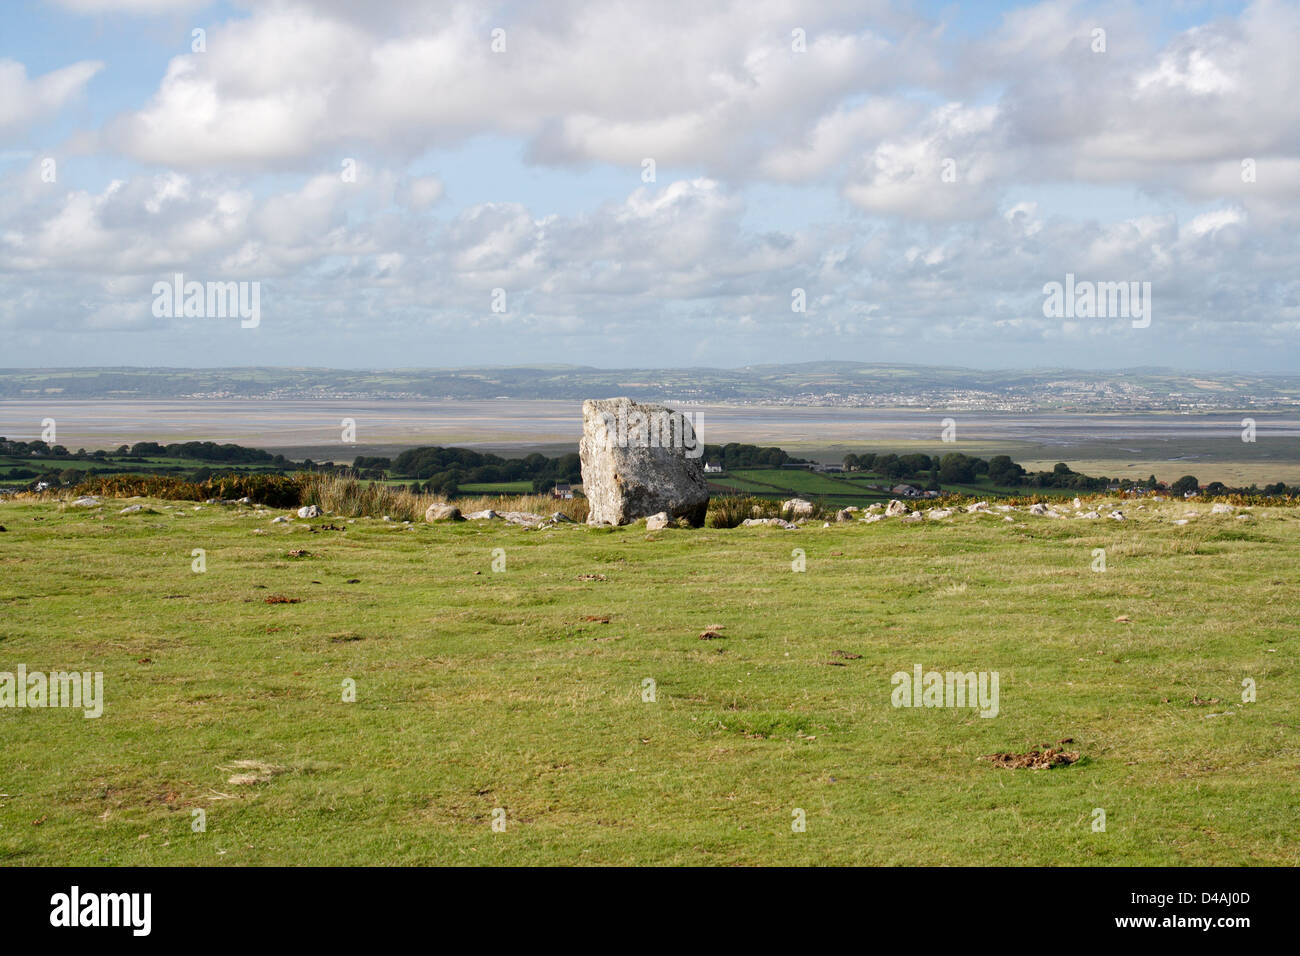 Arthurs Stone Burial chambre près de Reynoldston sur la péninsule de Gower au pays de Galles, Welsh Landscape. Campagne britannique d'une beauté naturelle Banque D'Images